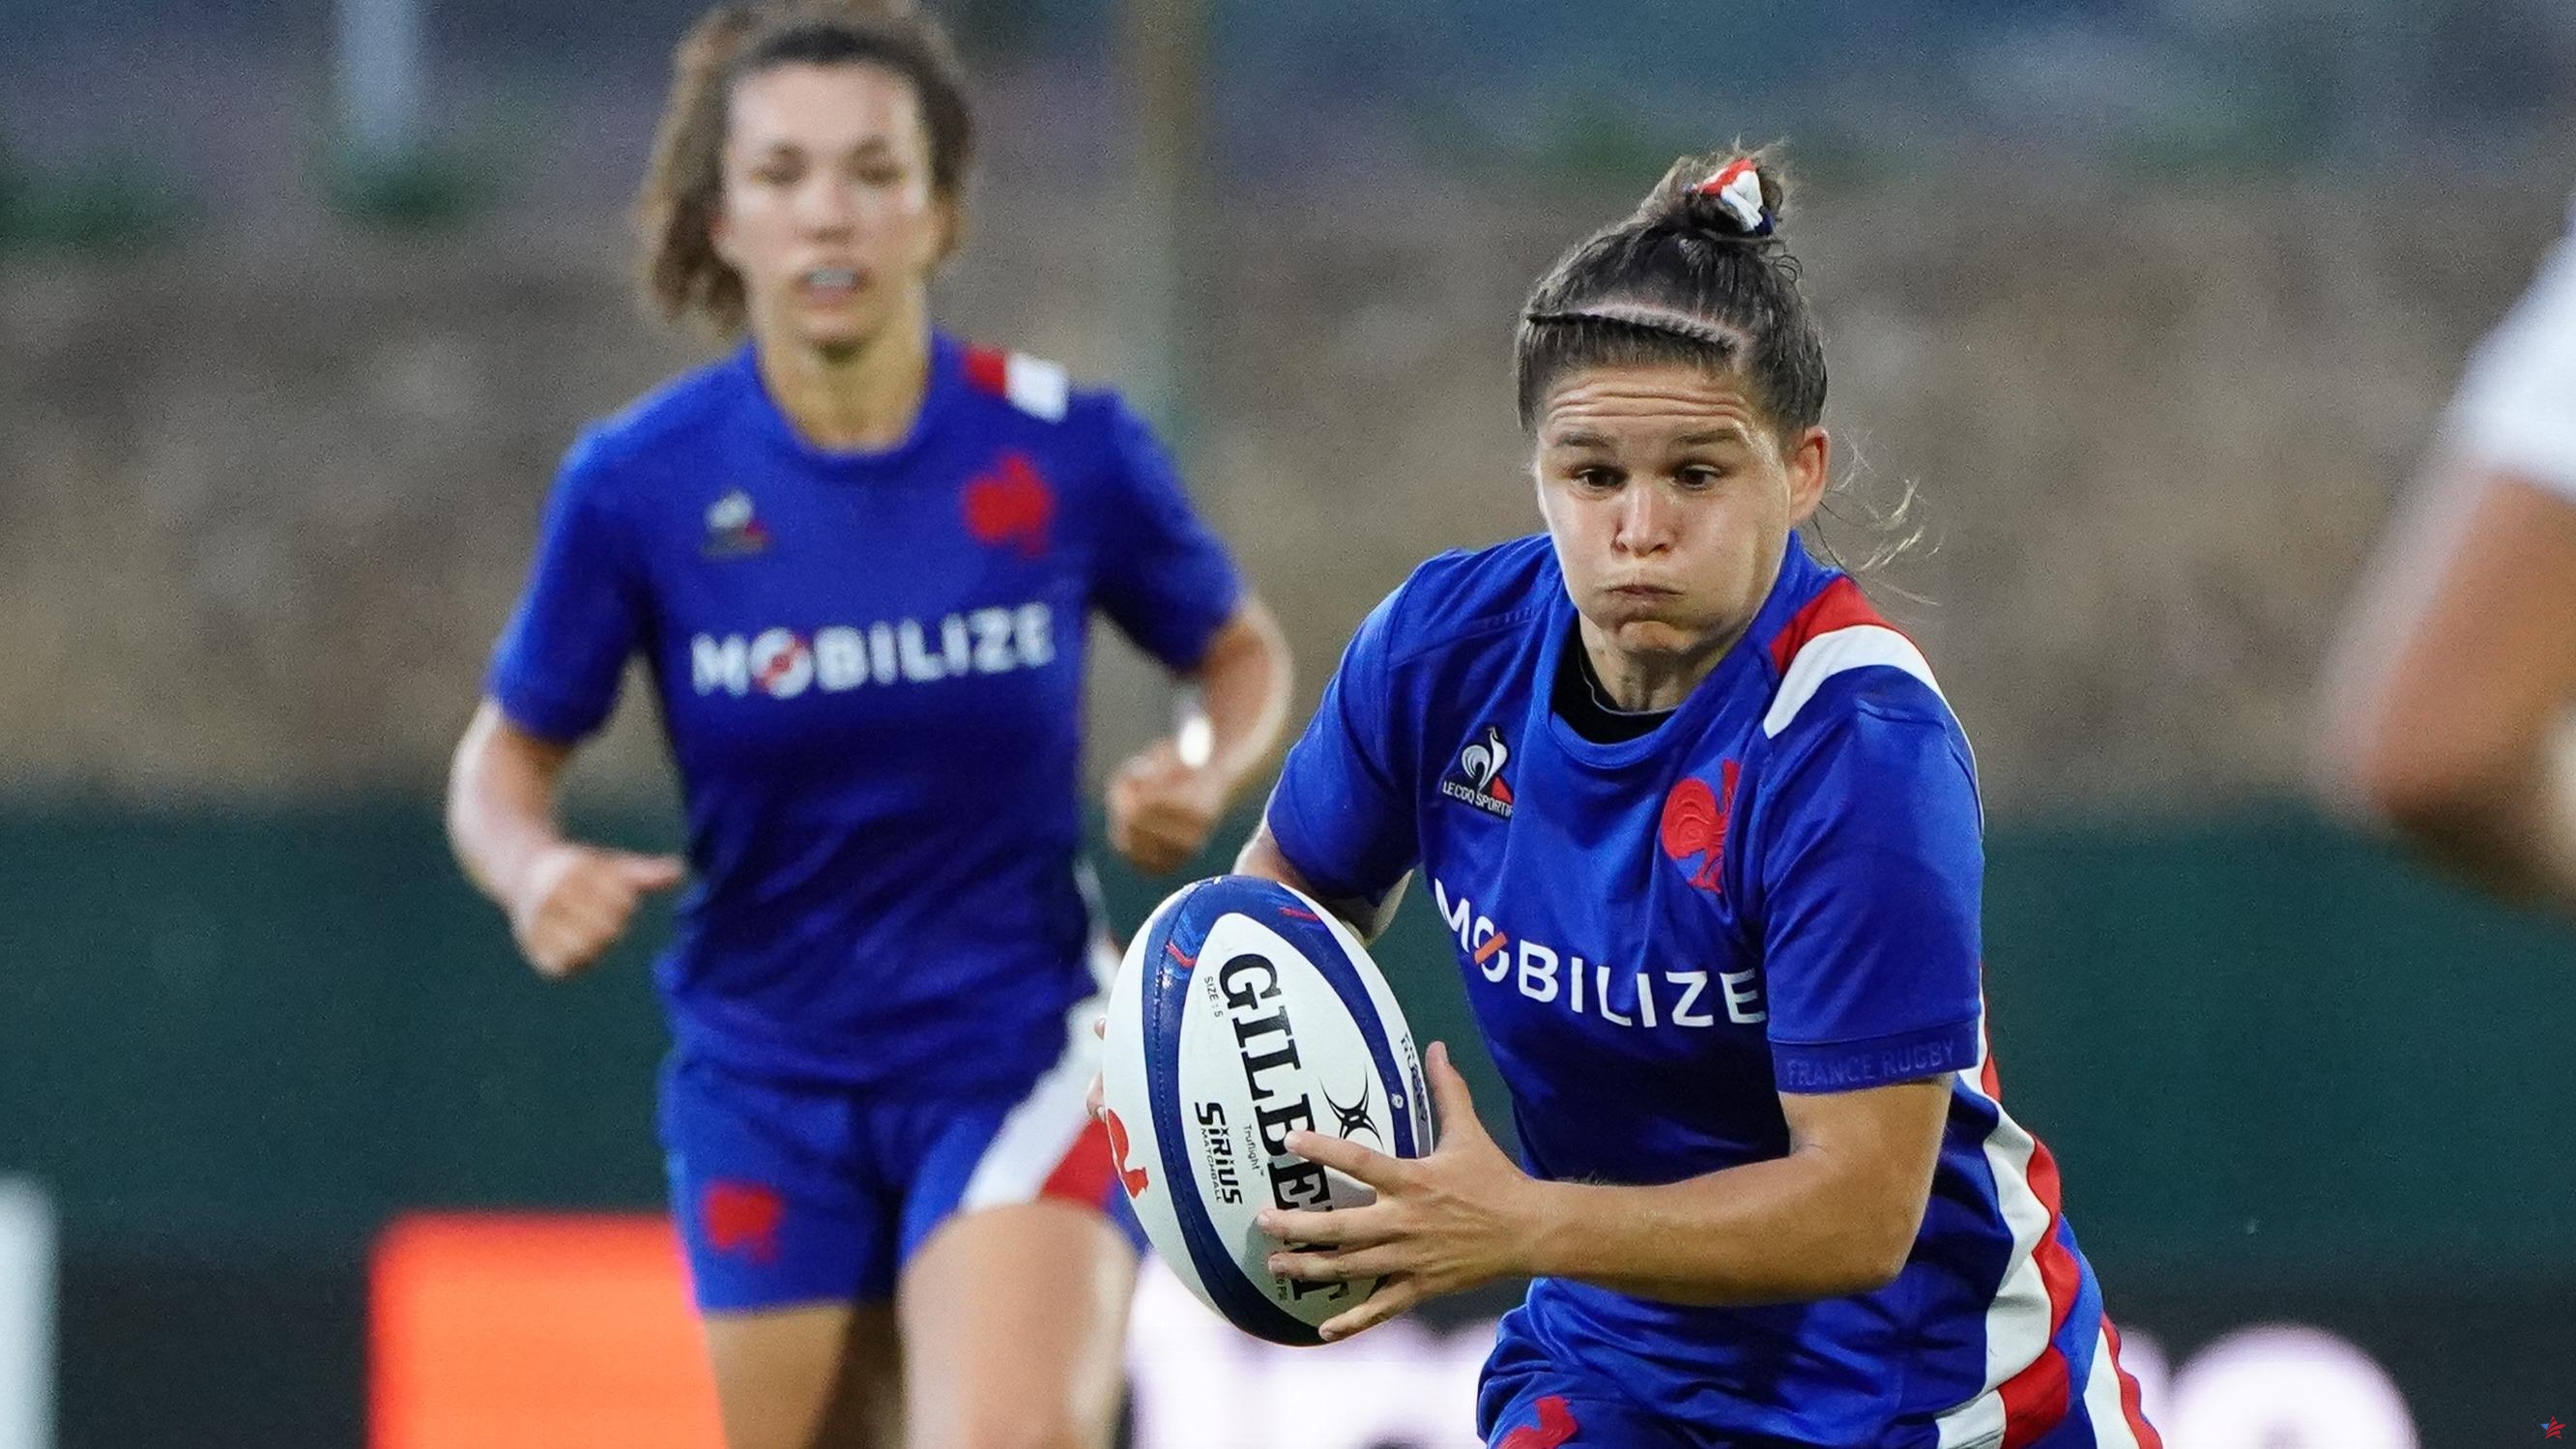 Rugby: una internacional francesa acompañada de su hija de 2 años en Marcoussis, la primera